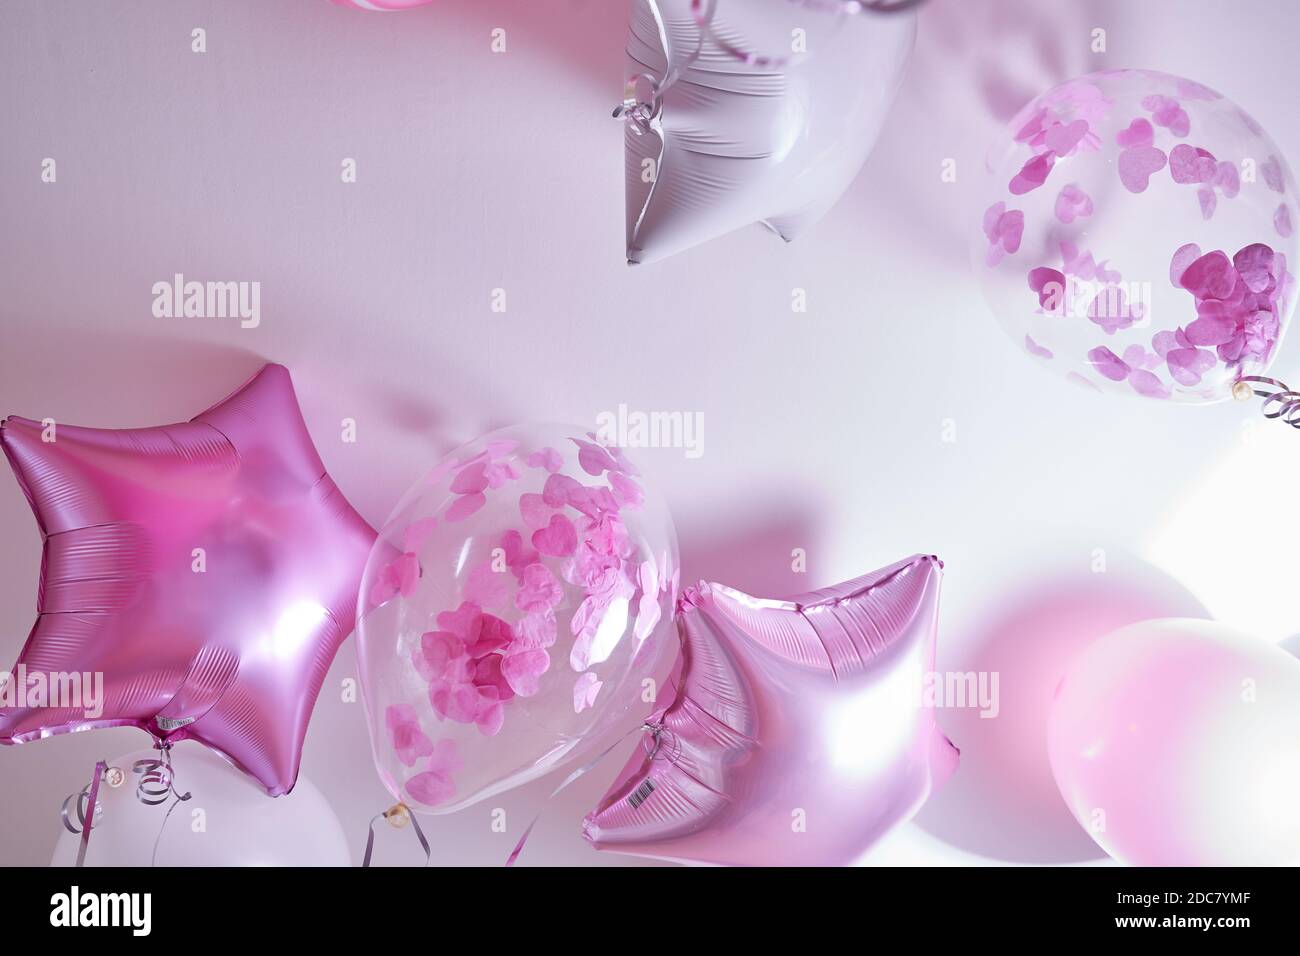 Palloncini rosa, bianchi e trasparenti con petali di rosa gonfiati